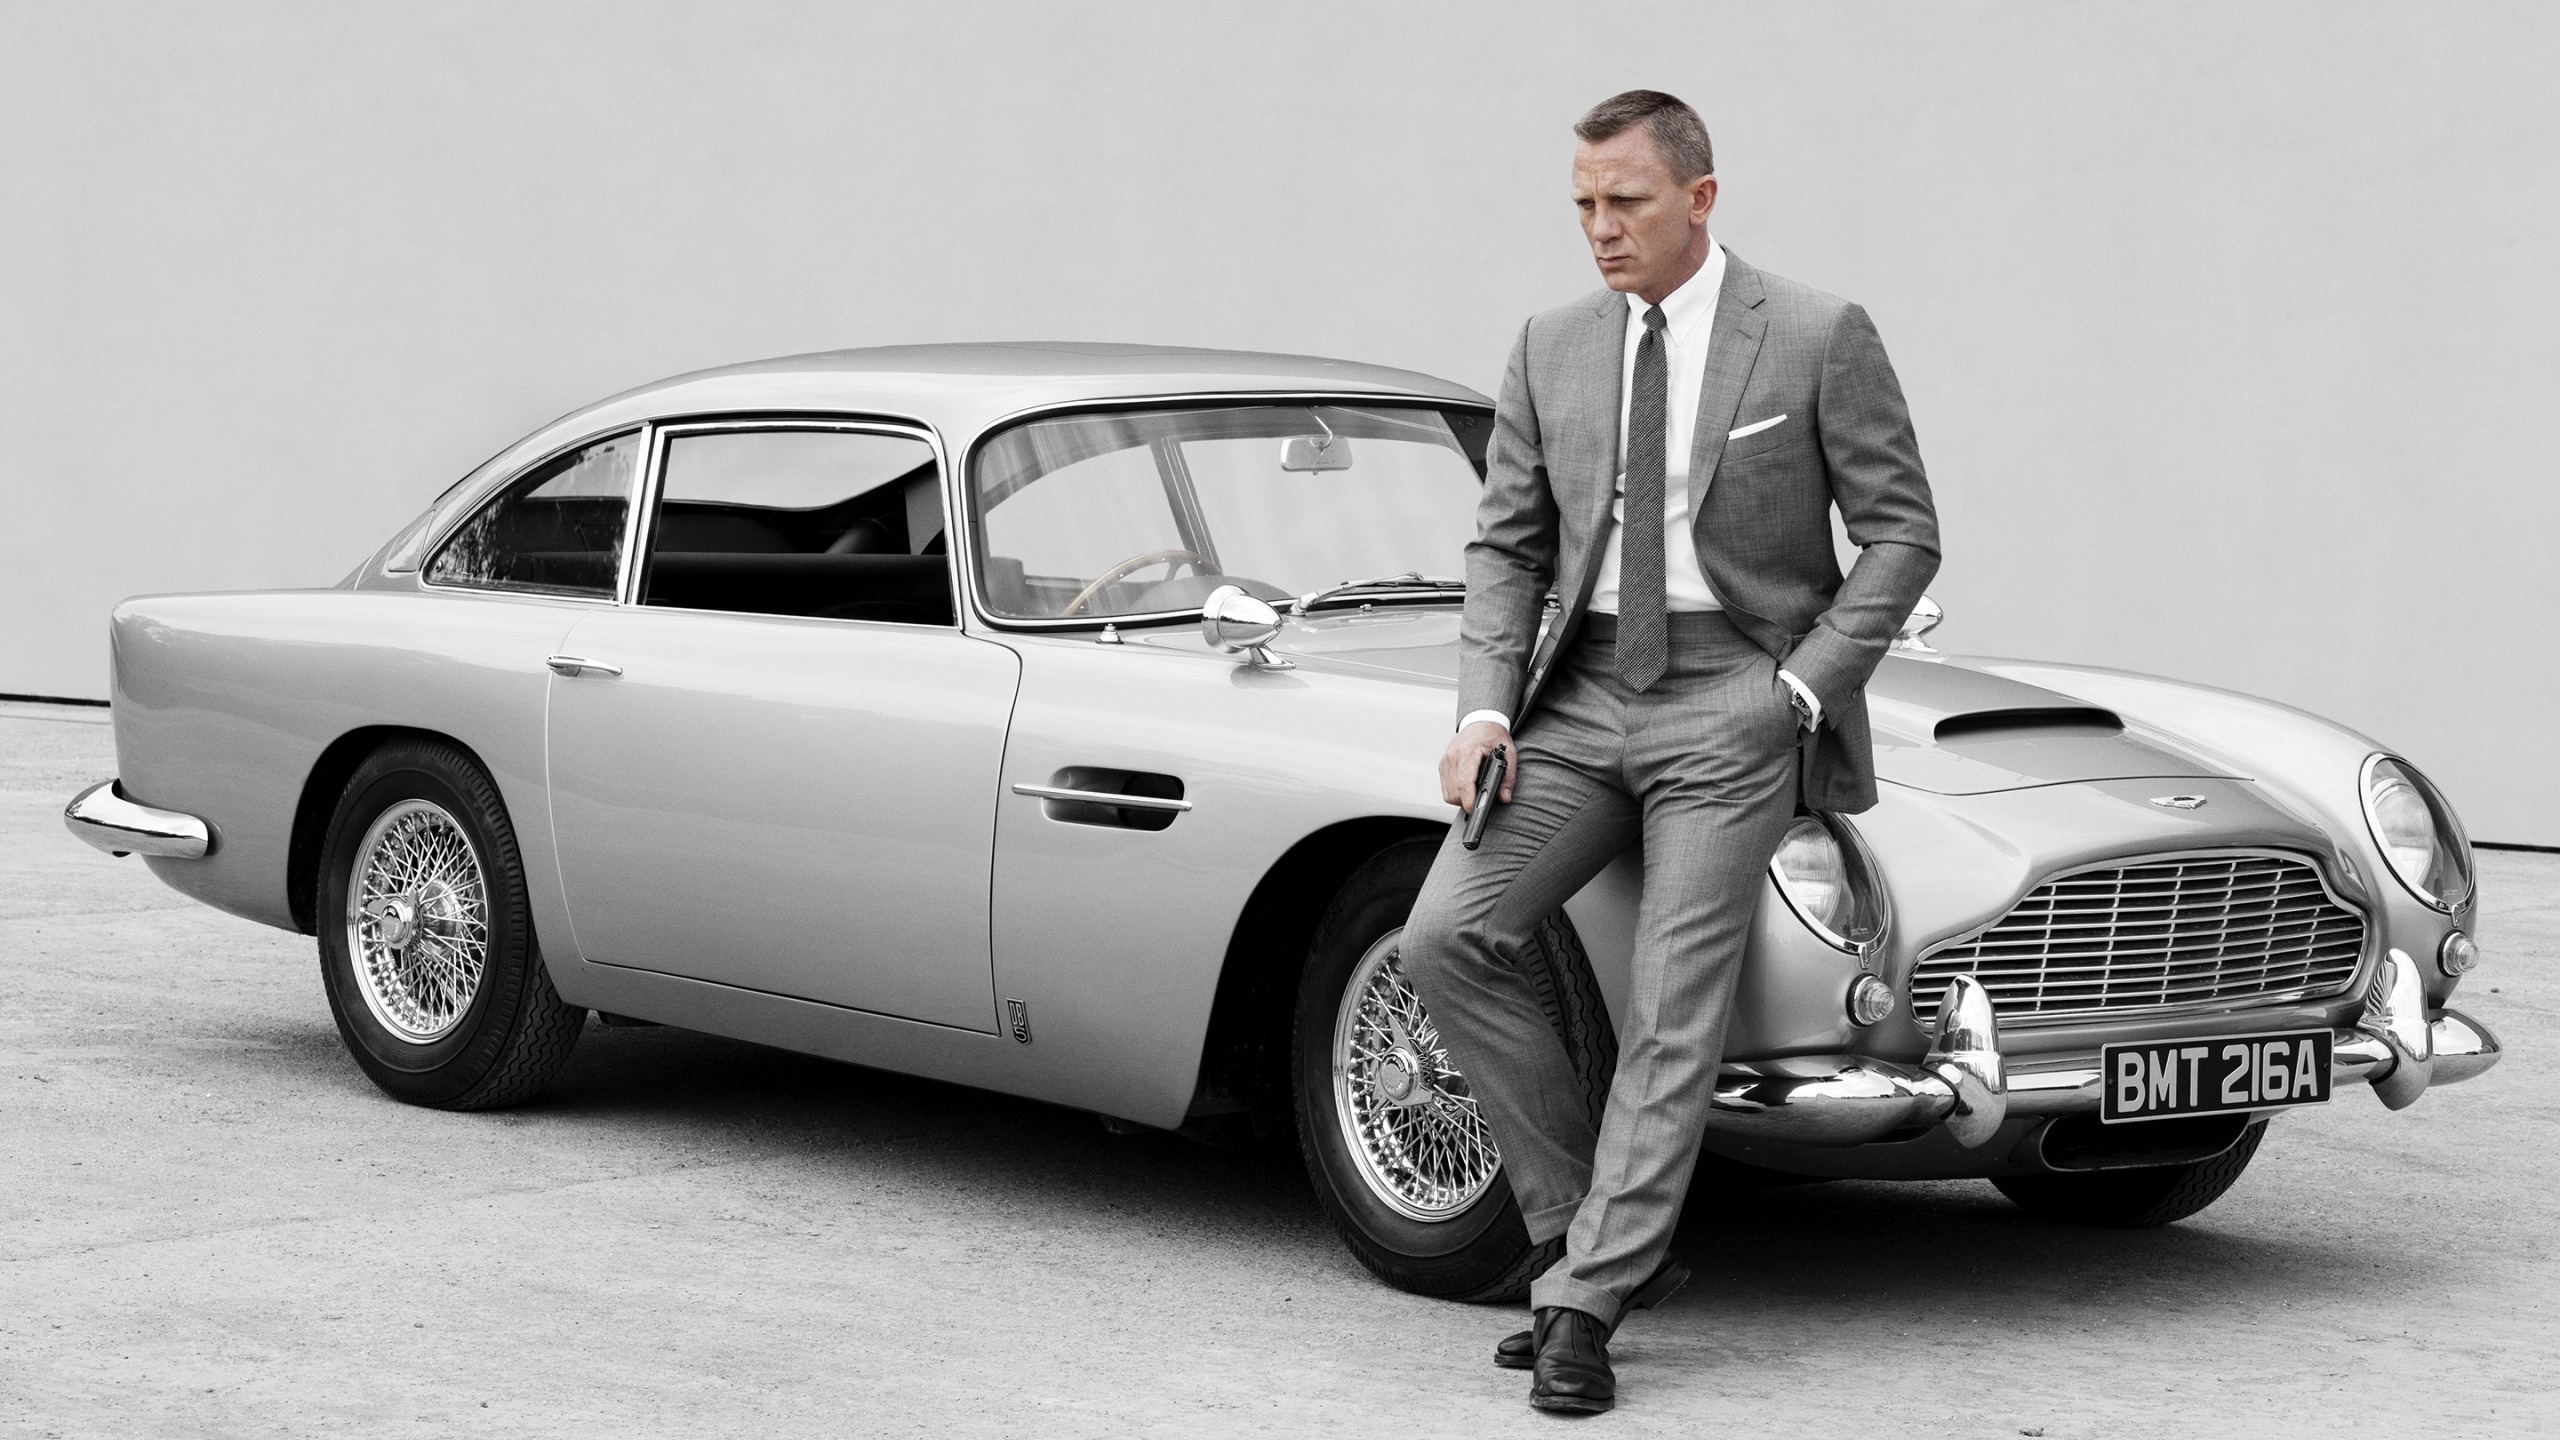 James Bond Skyfall 007 for 2560x1440 HDTV resolution